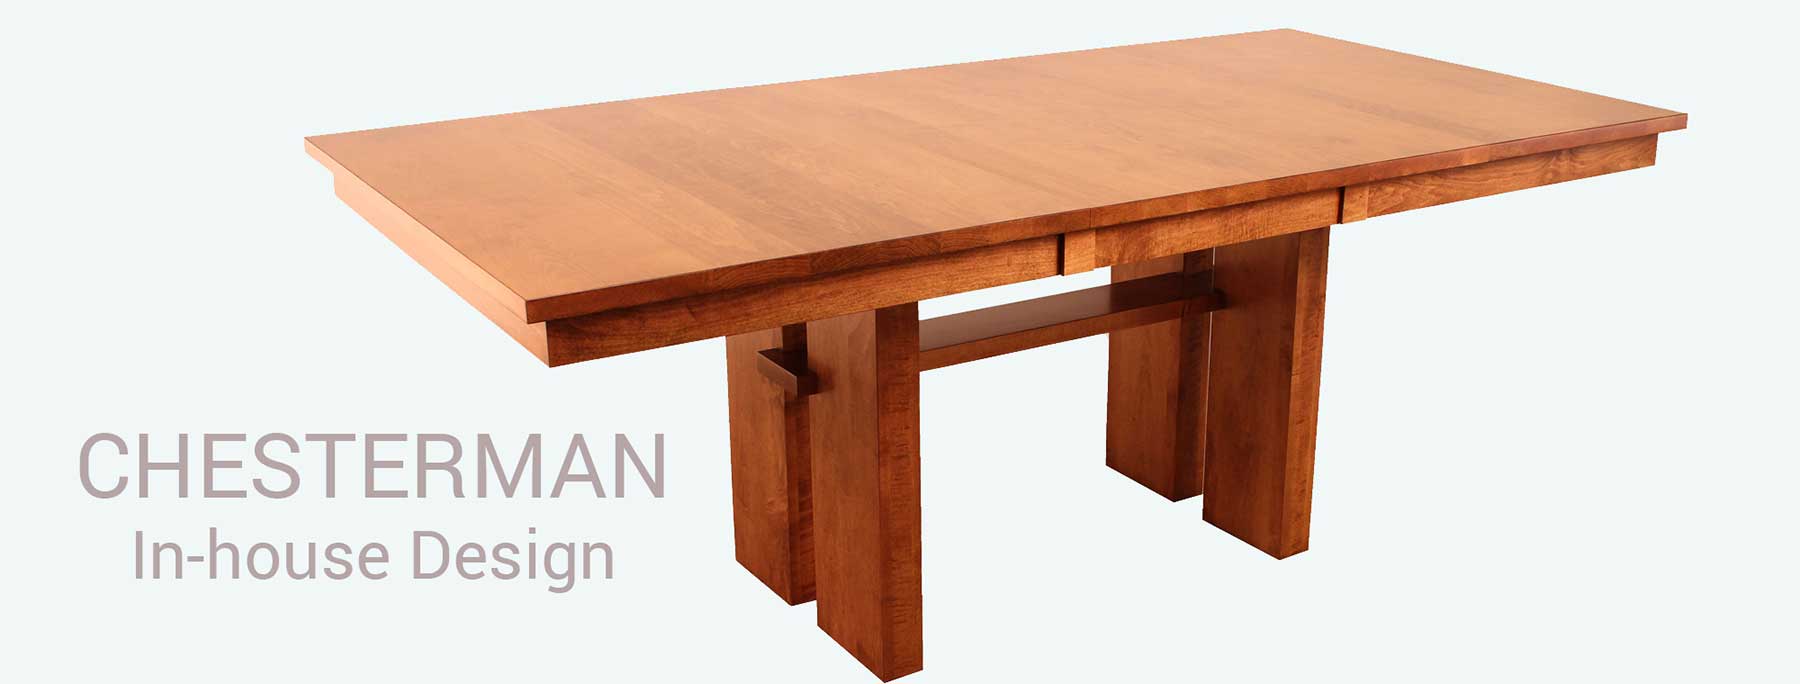 Chesterman contemporary furniture line